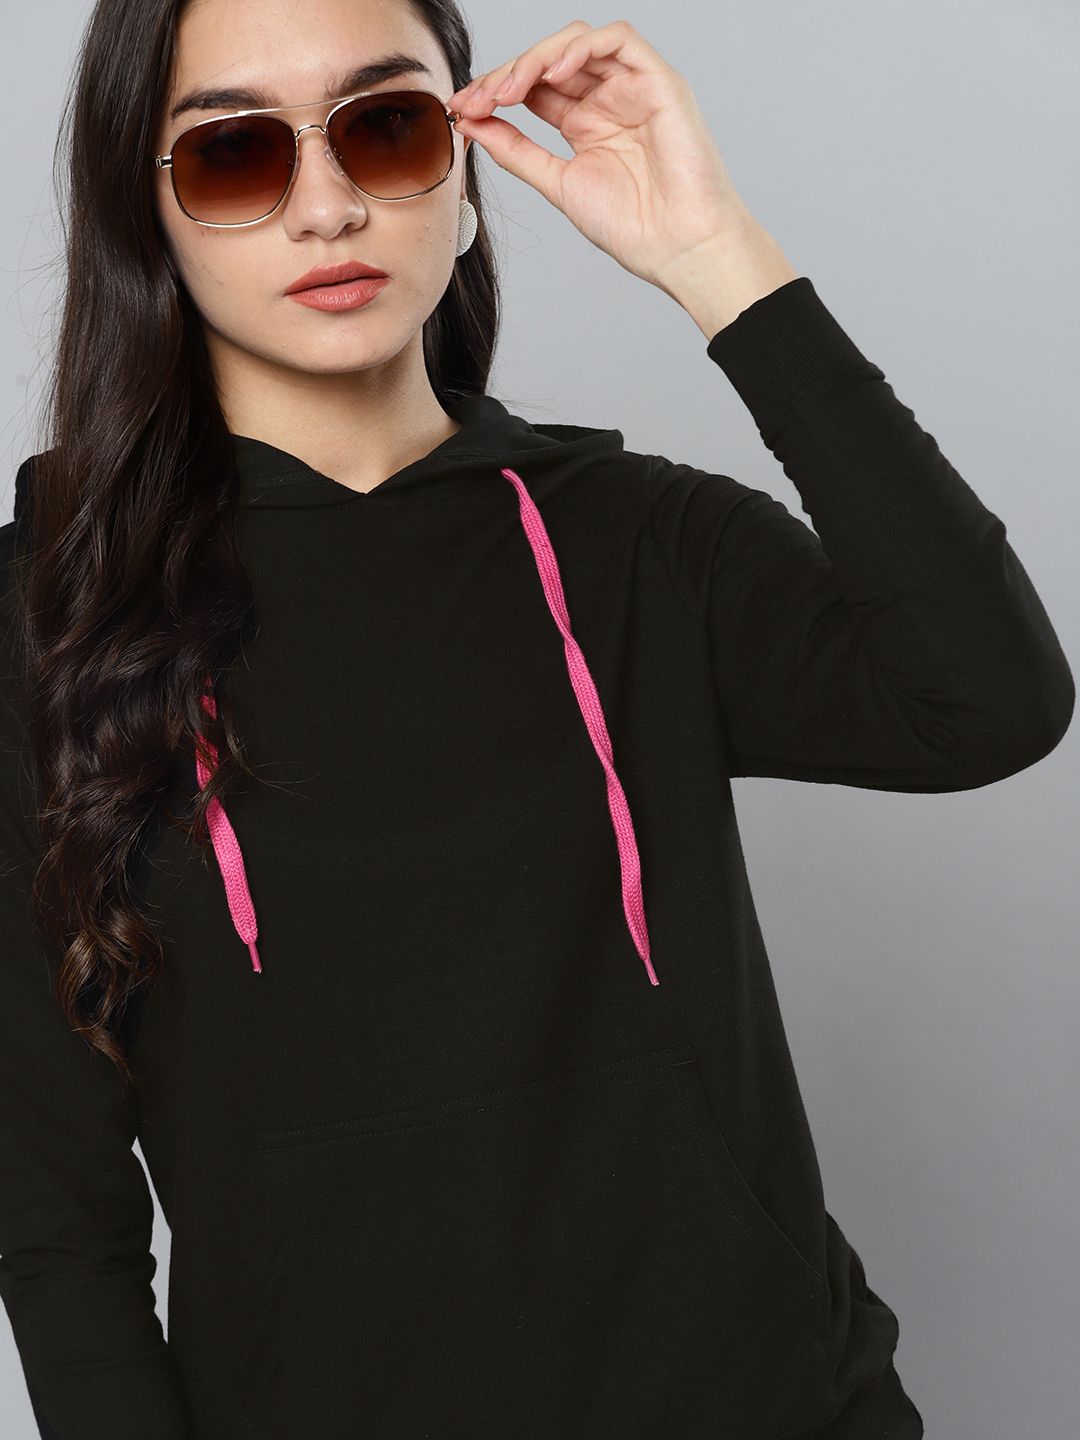 Kook N Keech Women Black Hooded Sweatshirt Price in India